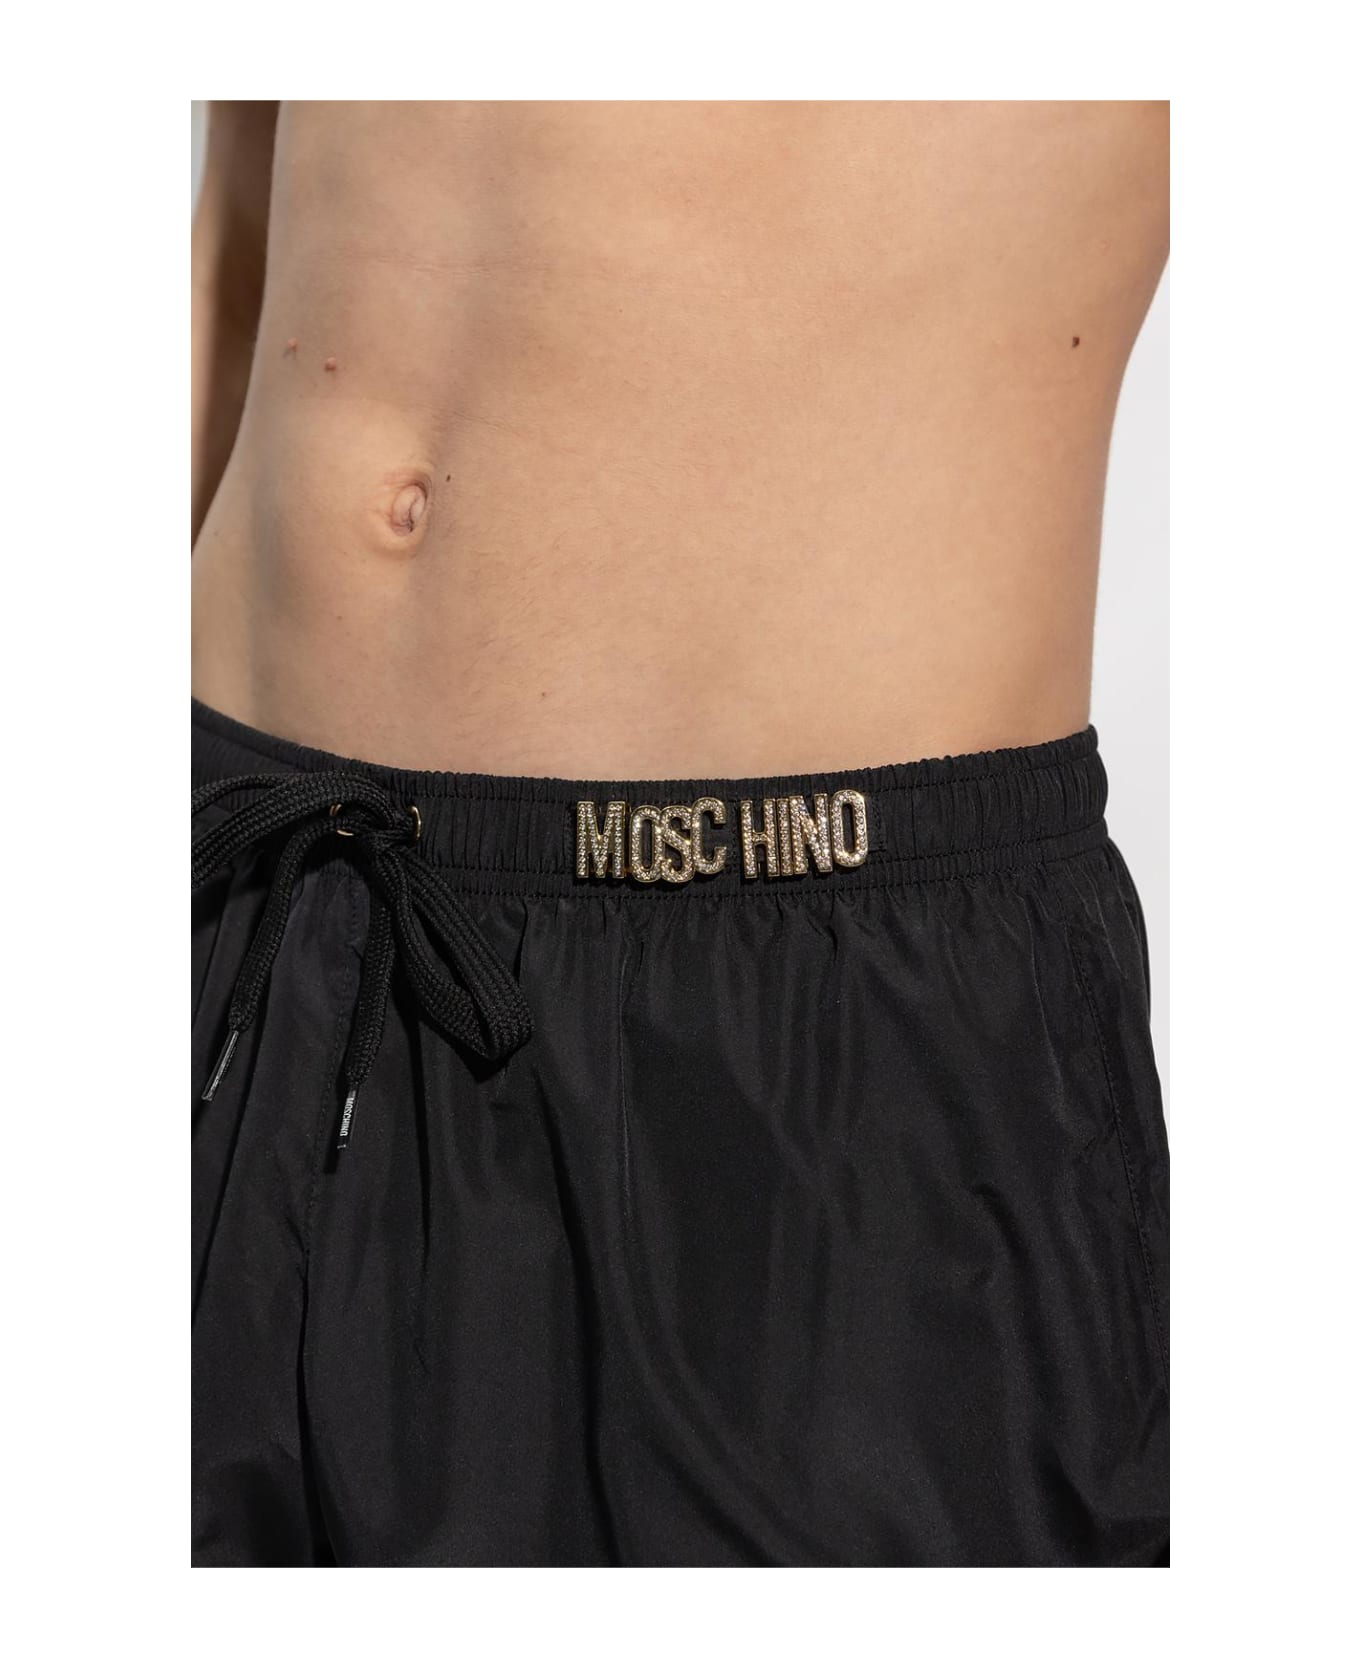 Moschino Swimming Shorts - Black